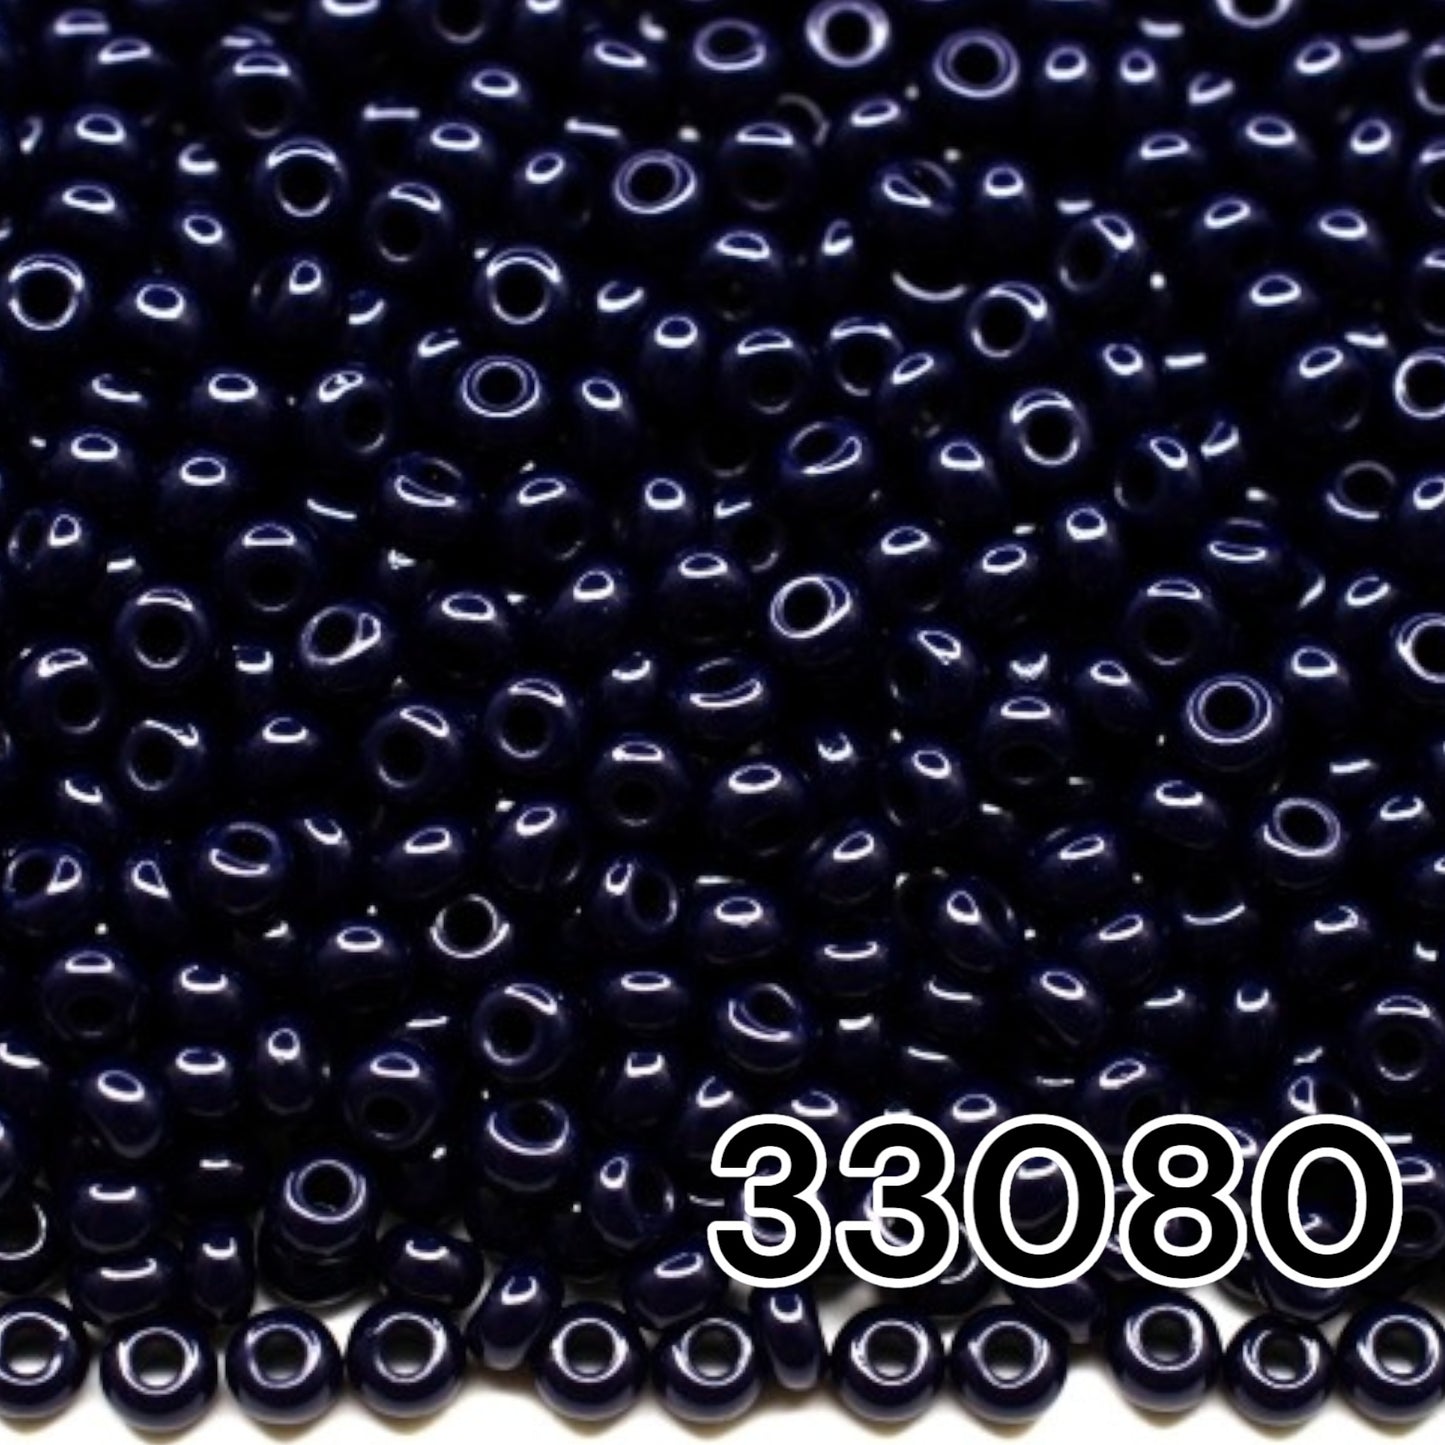 10/0 33080 Preciosa Seed Beads. Opaque blue.